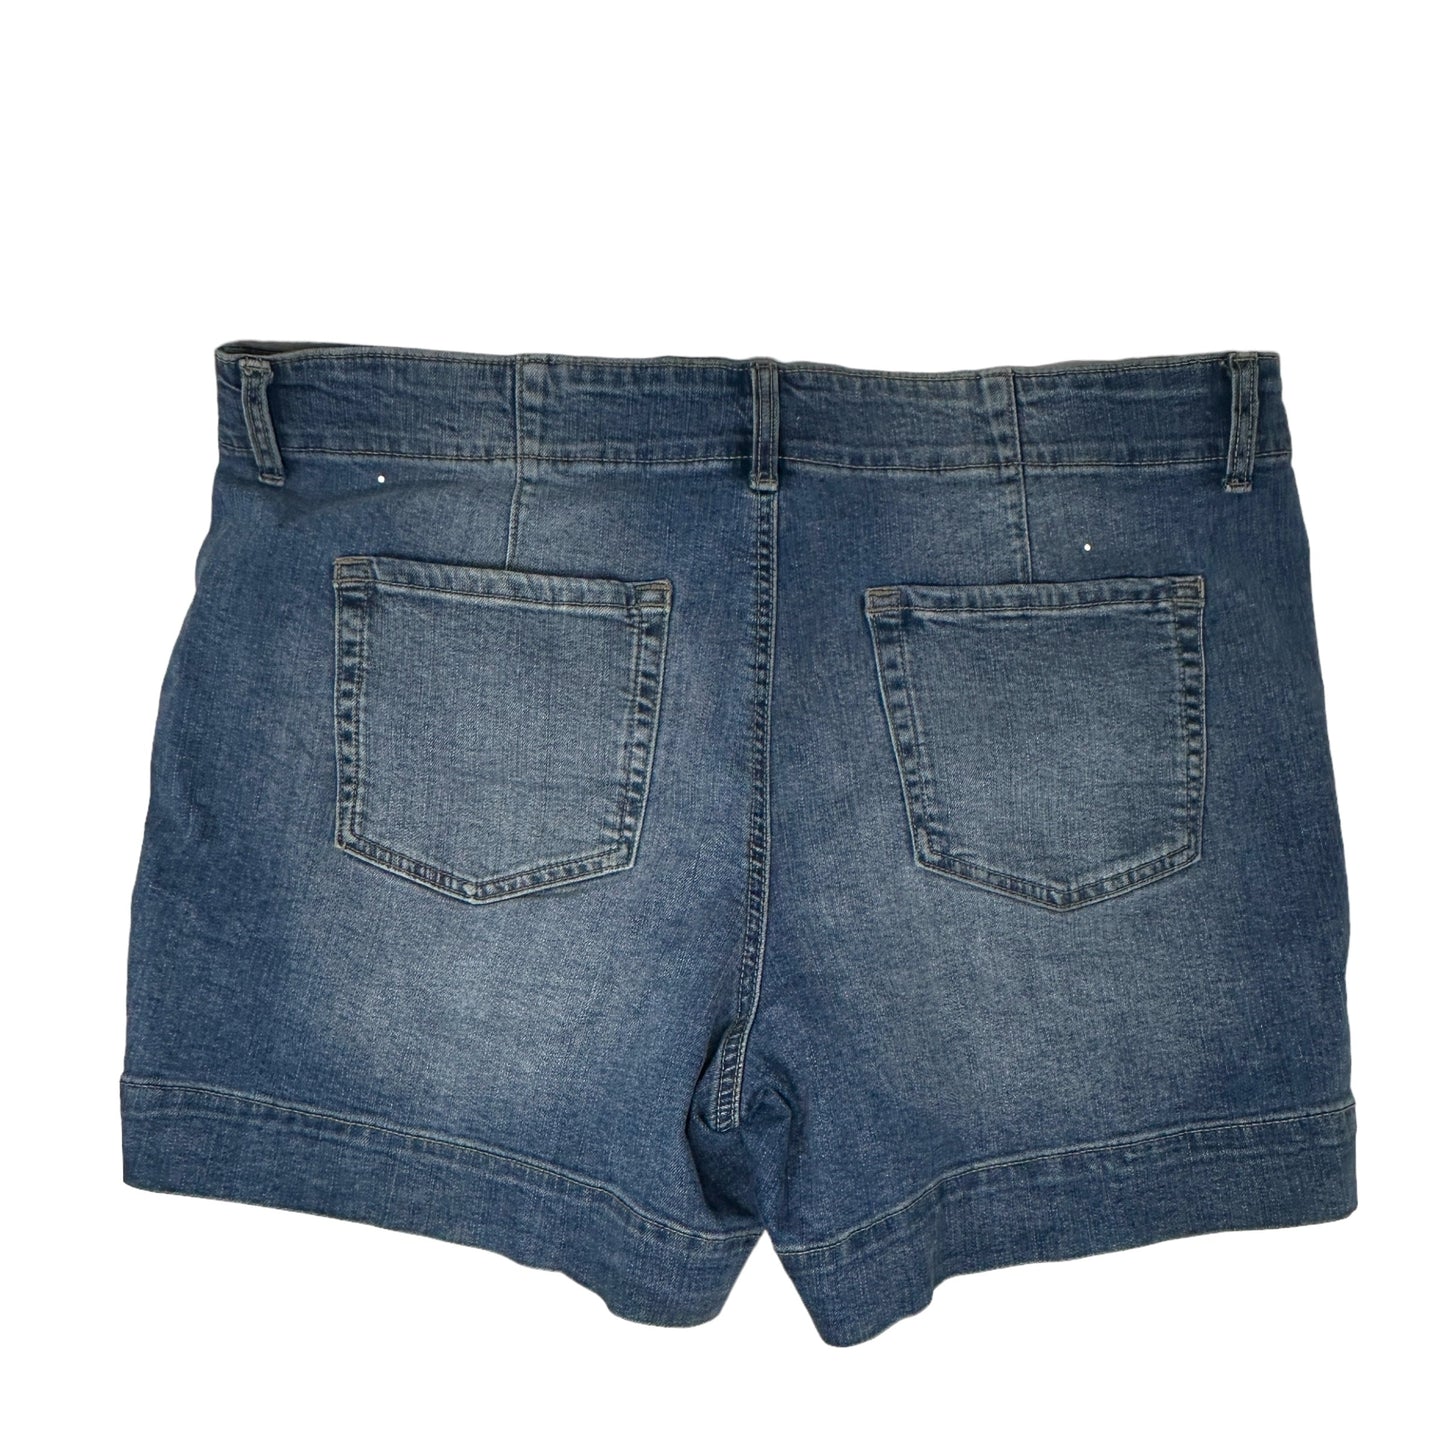 Blue Denim Shorts M Jeans, Size 18